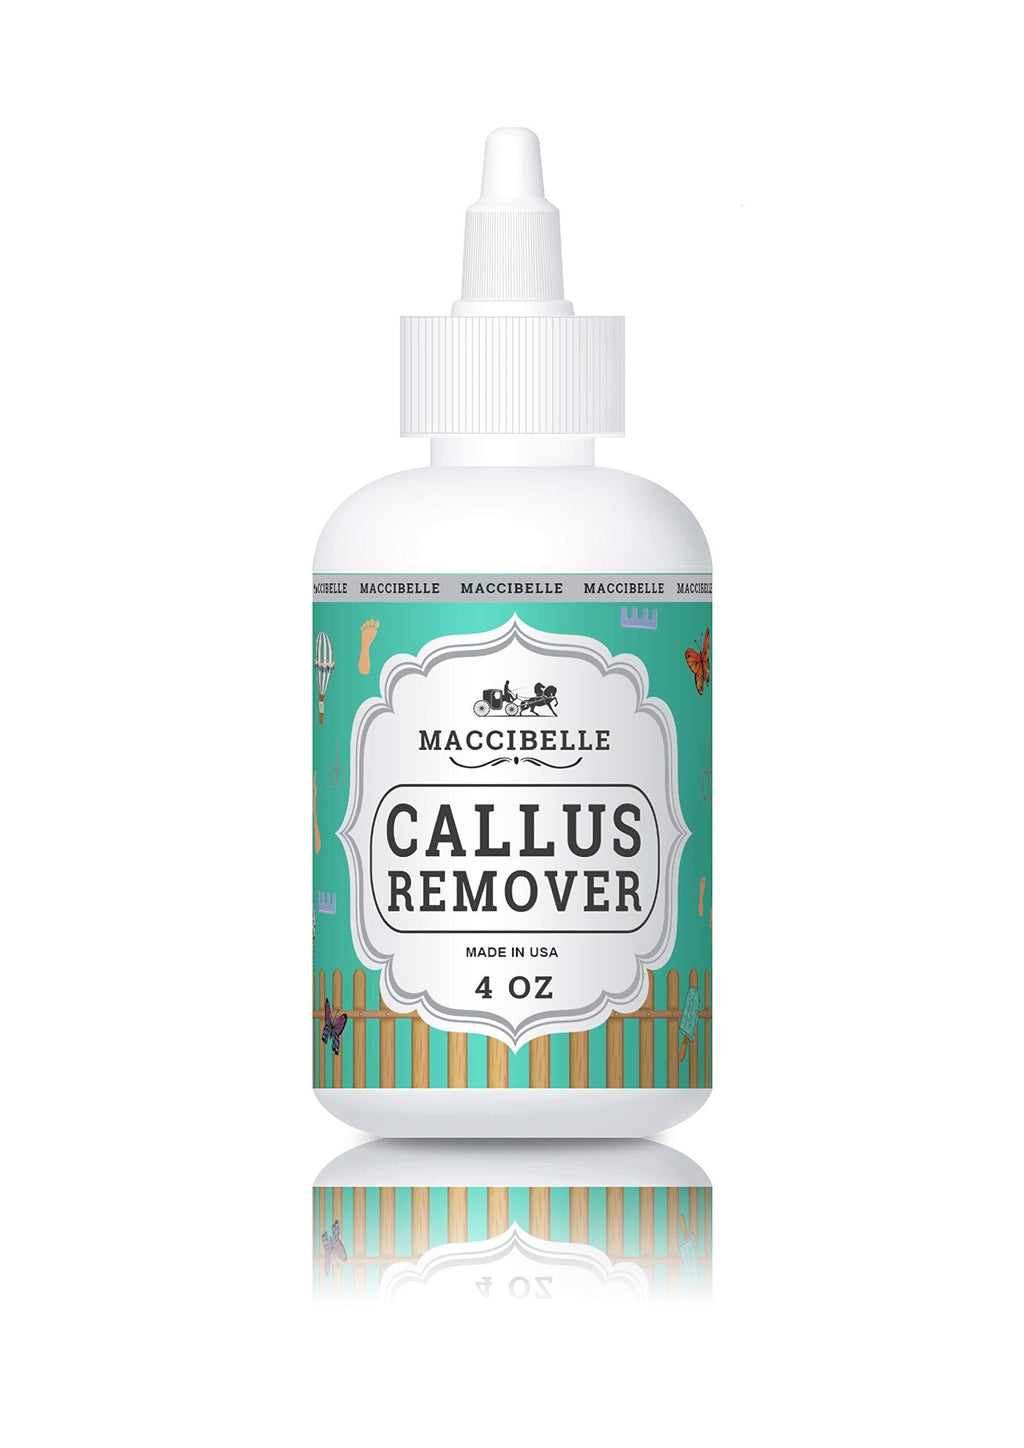 Maccibelle Callus Remover EXTRA STRENGTH For Feet, Professional Callus and Corn Eliminator Liquid Gel 4 oz Pack of 1 - BeesActive Australia